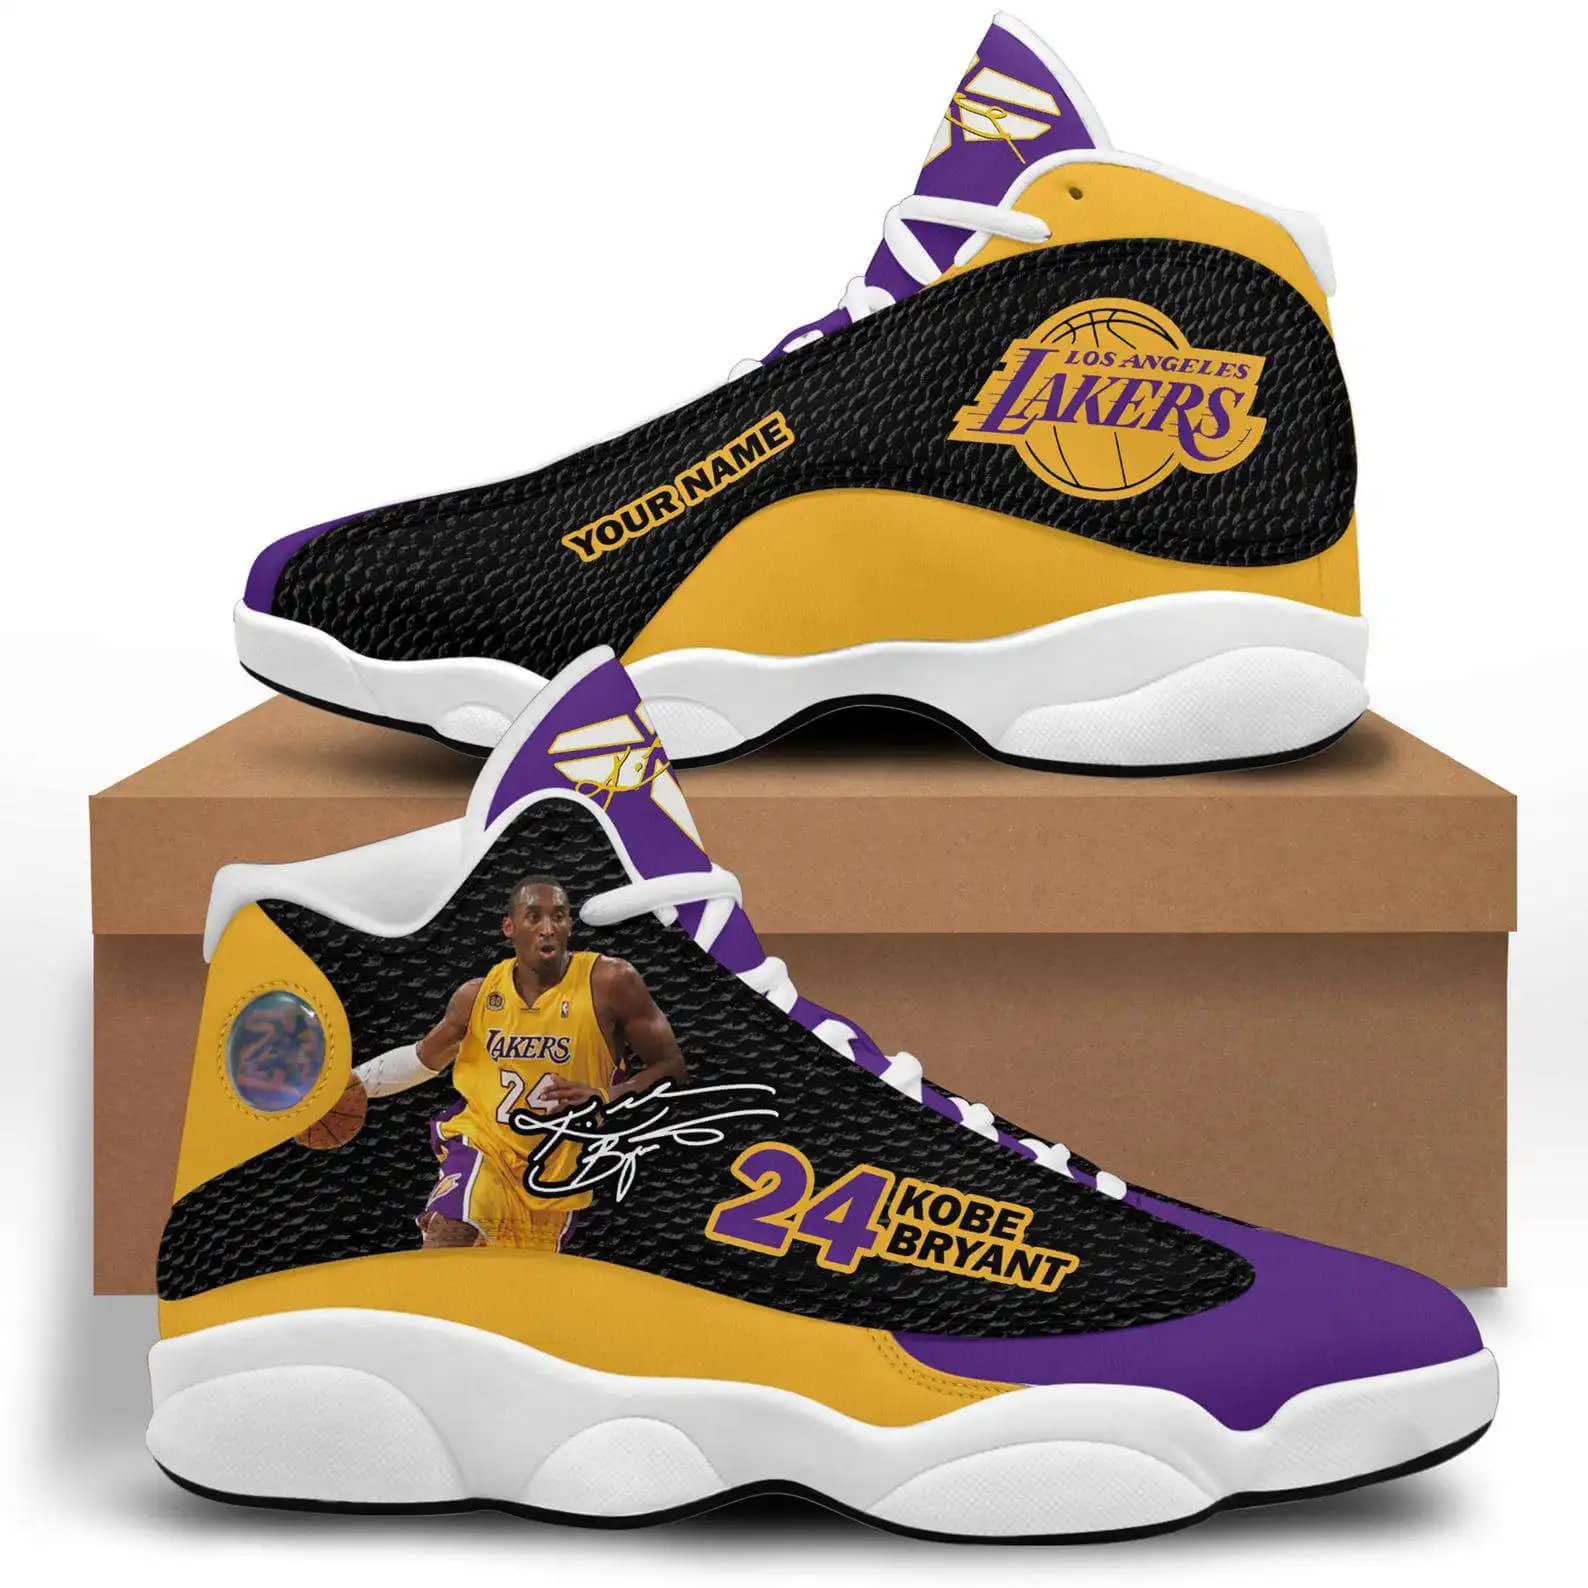 Personalized Custom Name Kobe Bryant Lakers 24 Air Jordan 13 Shoes